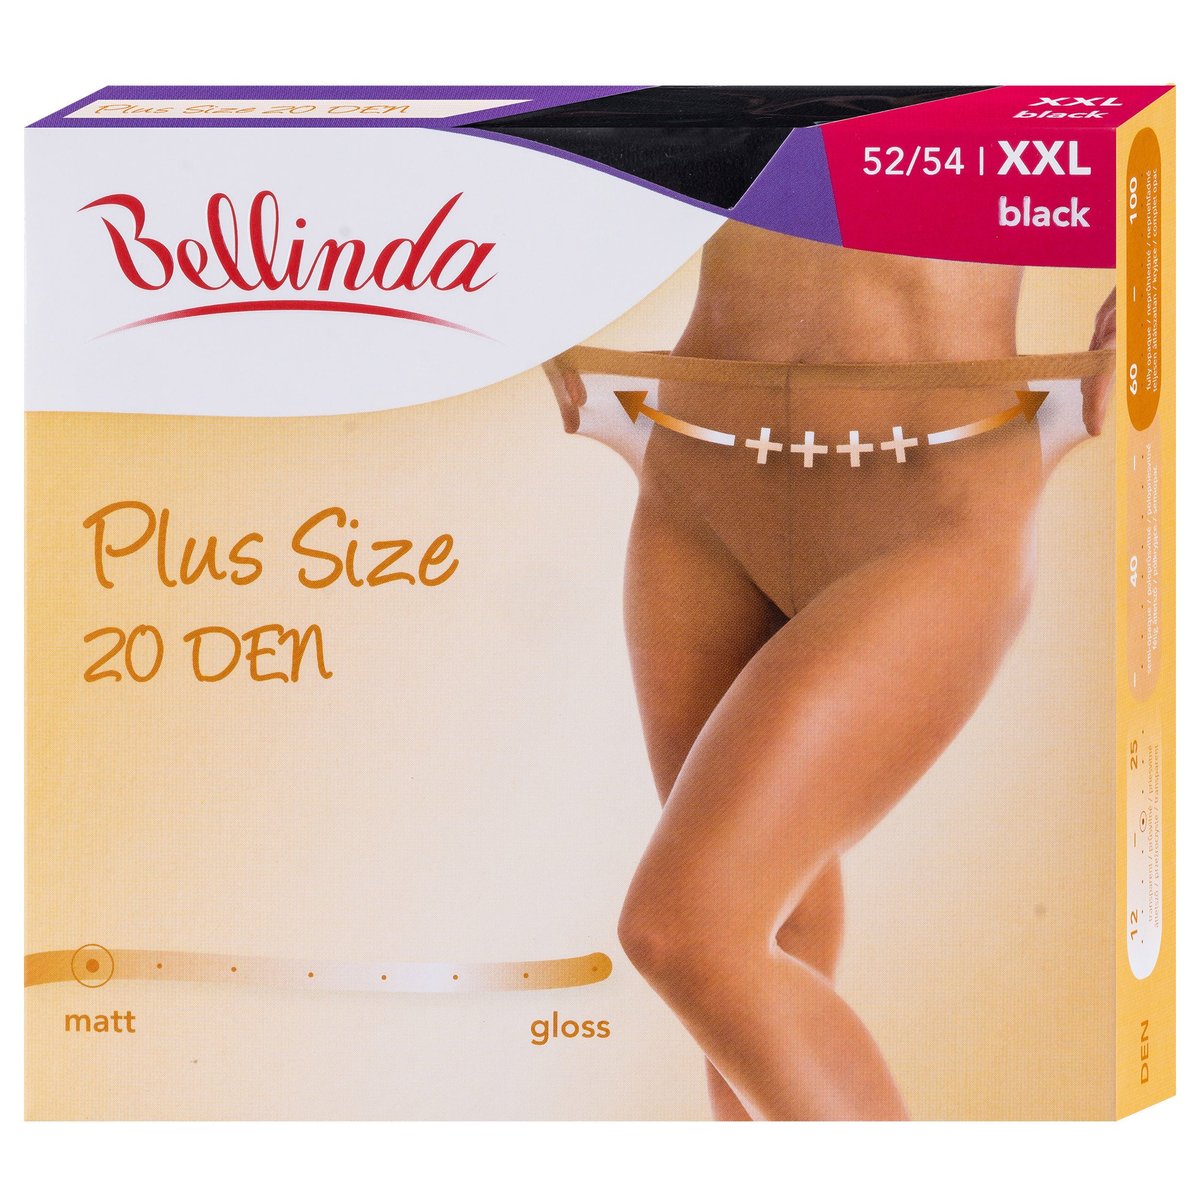 Bellinda Punčochové kalhoty Plus size, černé, velikost XXL